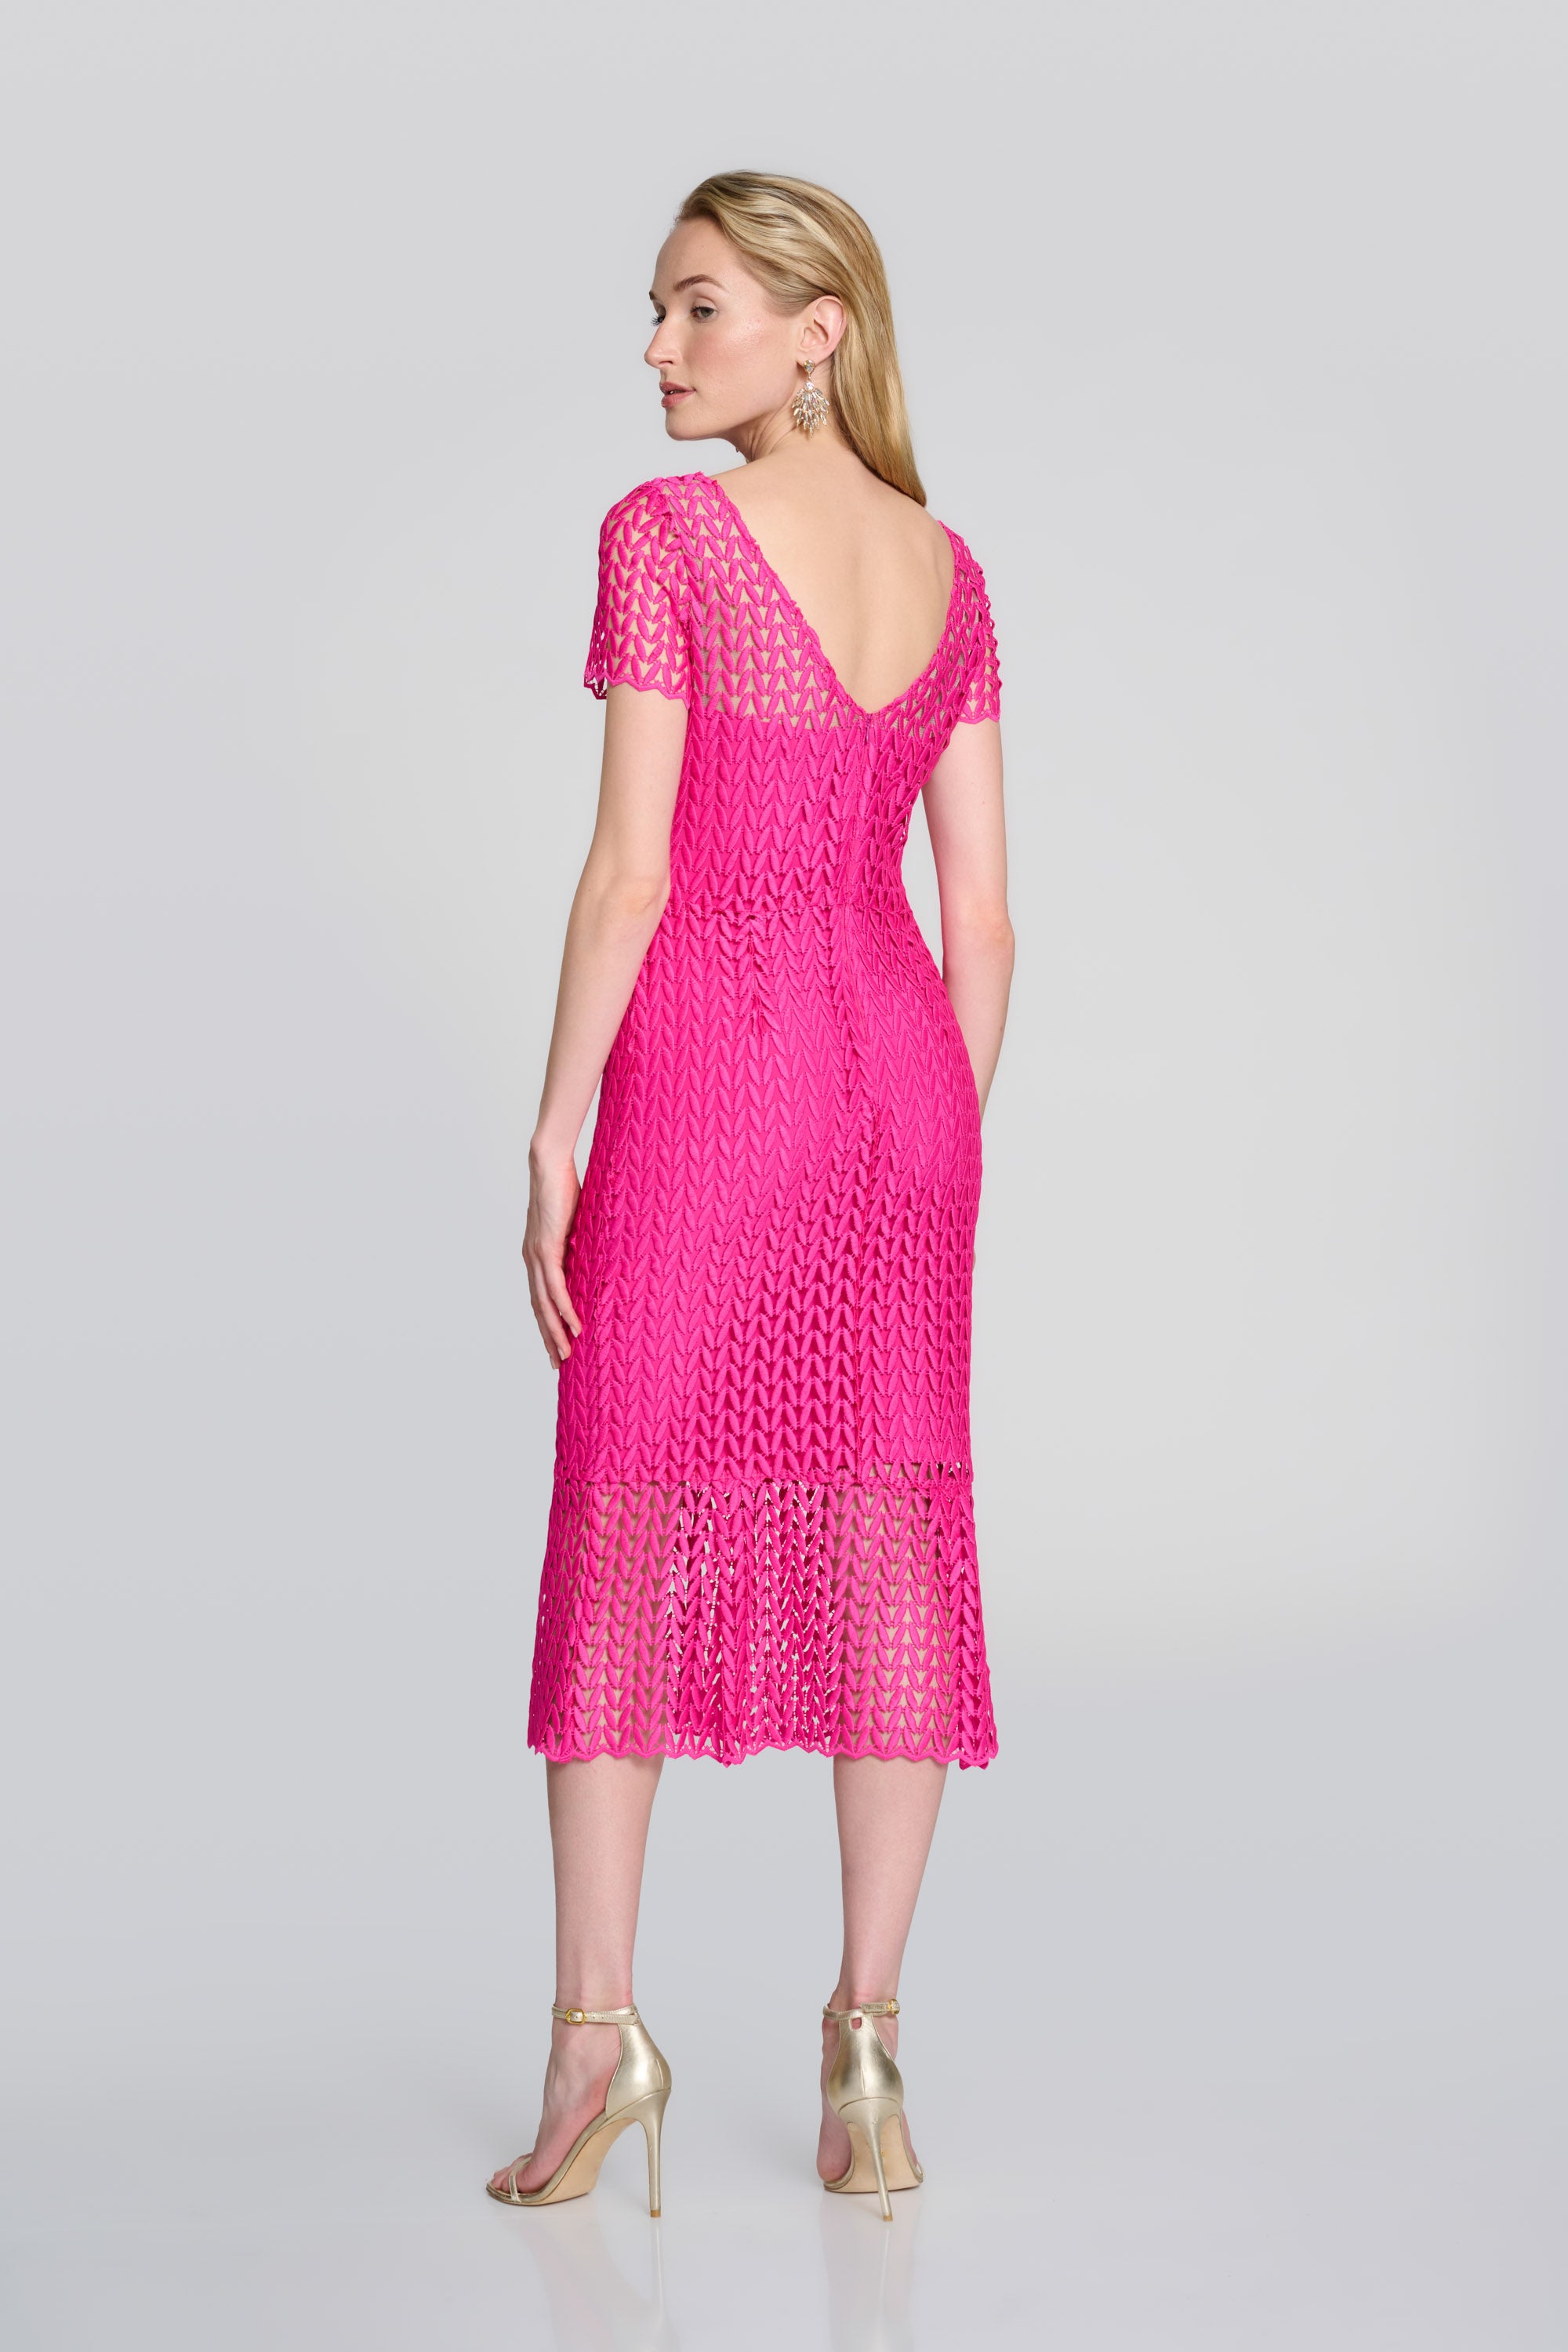 Phoebe - Joseph Ribkoff Pink Guipure Lace Flounce Dress